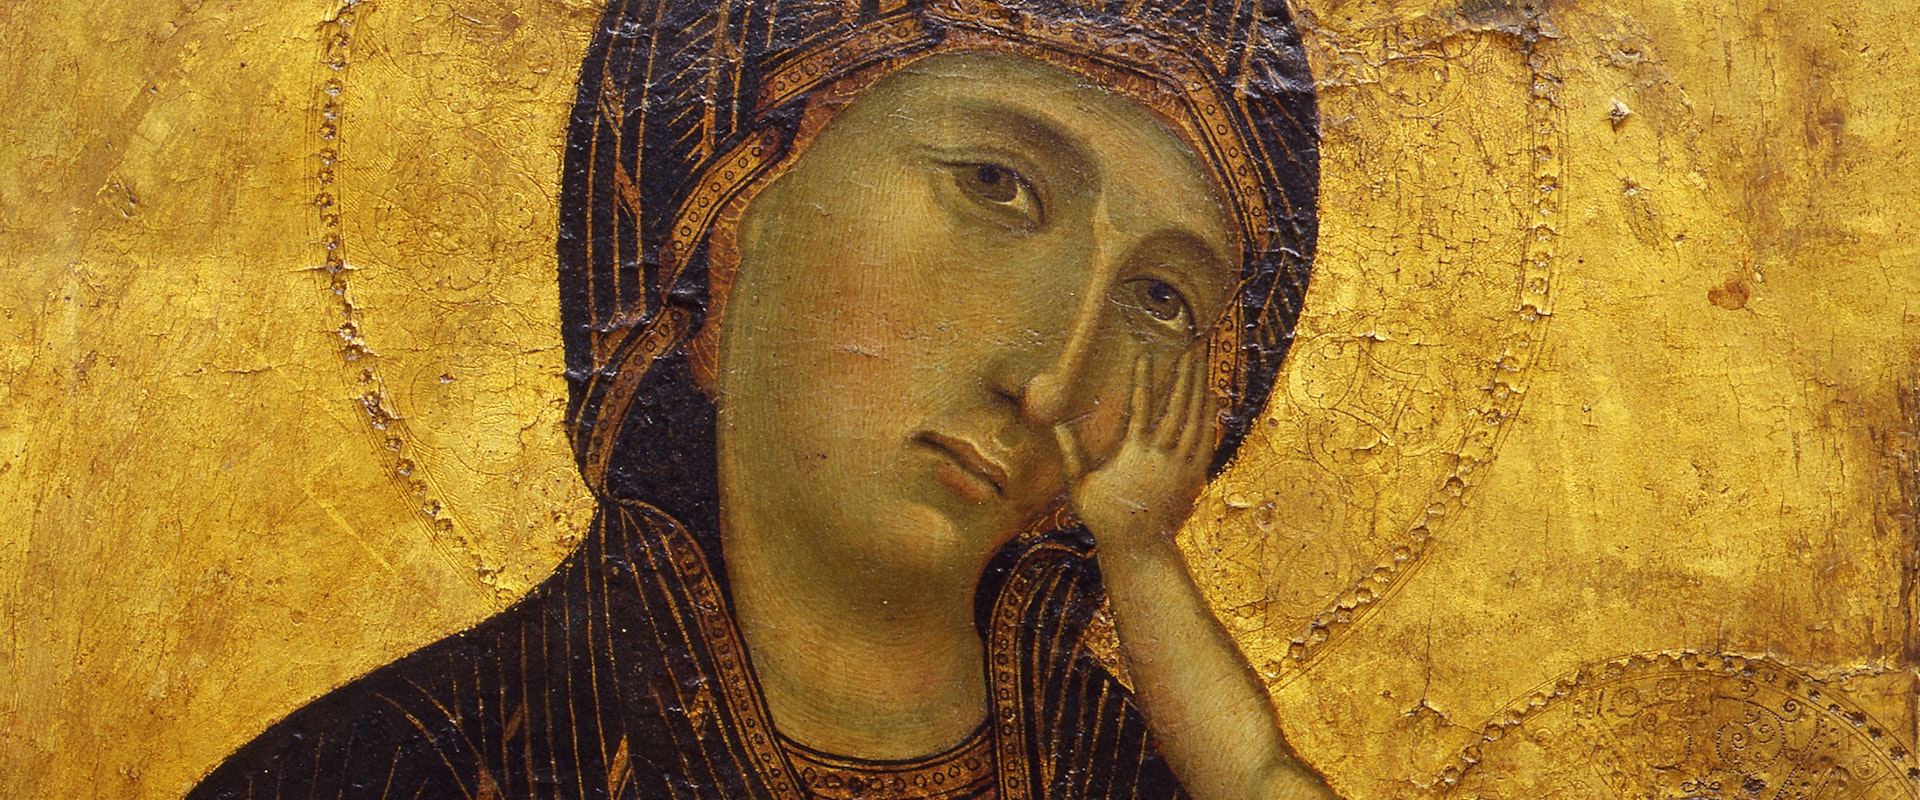 Cimabue e Giotto (?) - Madonna col Bambino (particolare)